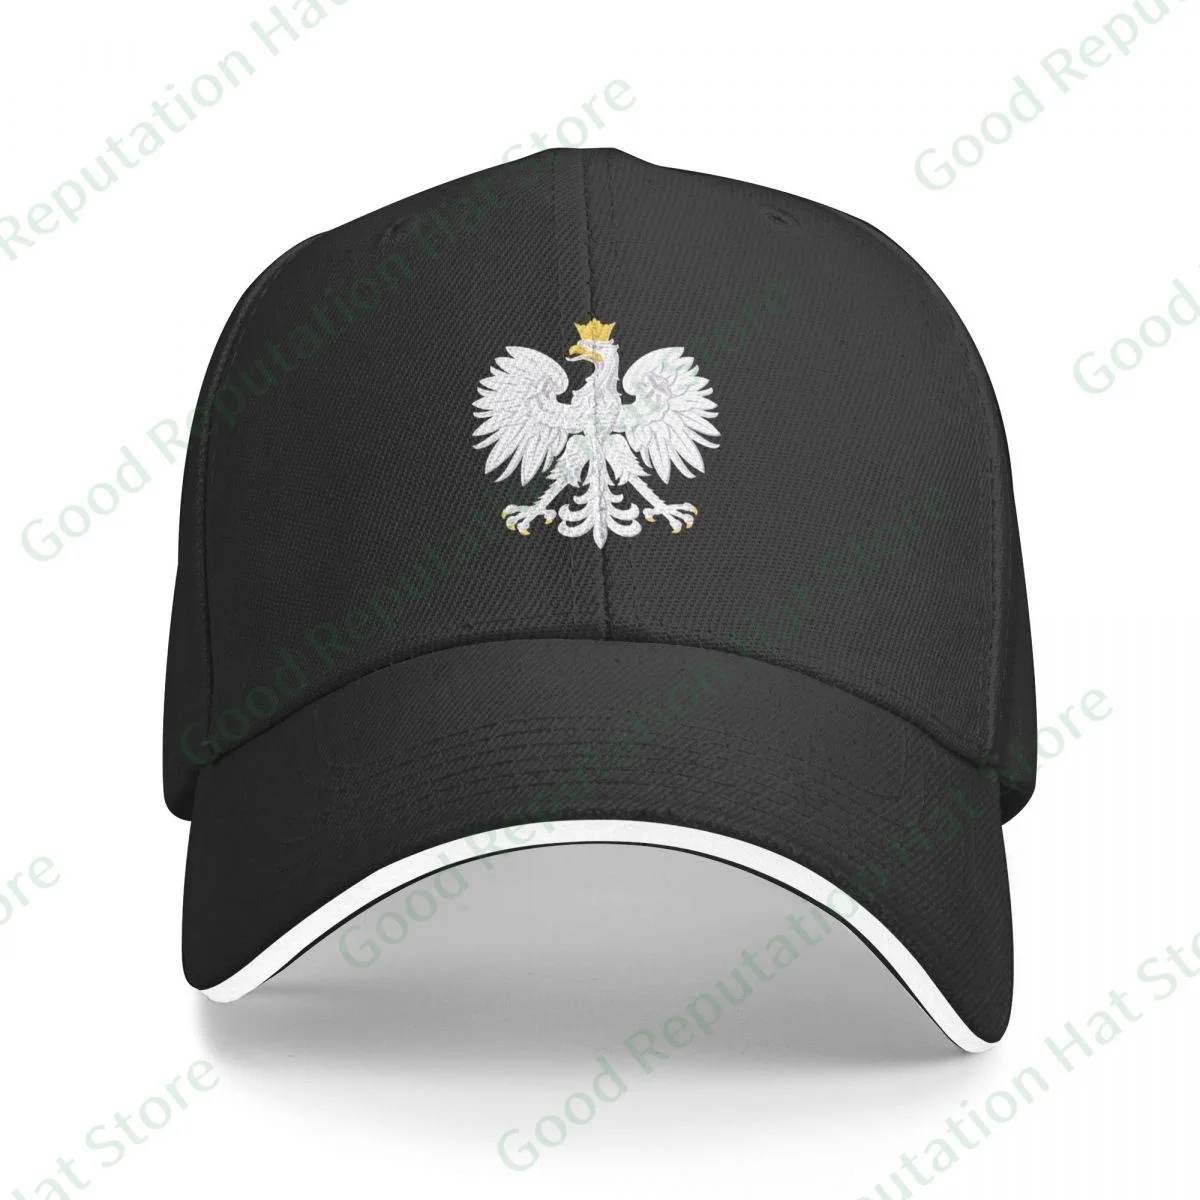 גברים נשים מספר צבע קלאסי Polska פולנית נשר כובע בייסבול כובע מצחיה מתכווננת יוניסקס בקיץ אבא כובע צל ספורט כובעים - 2